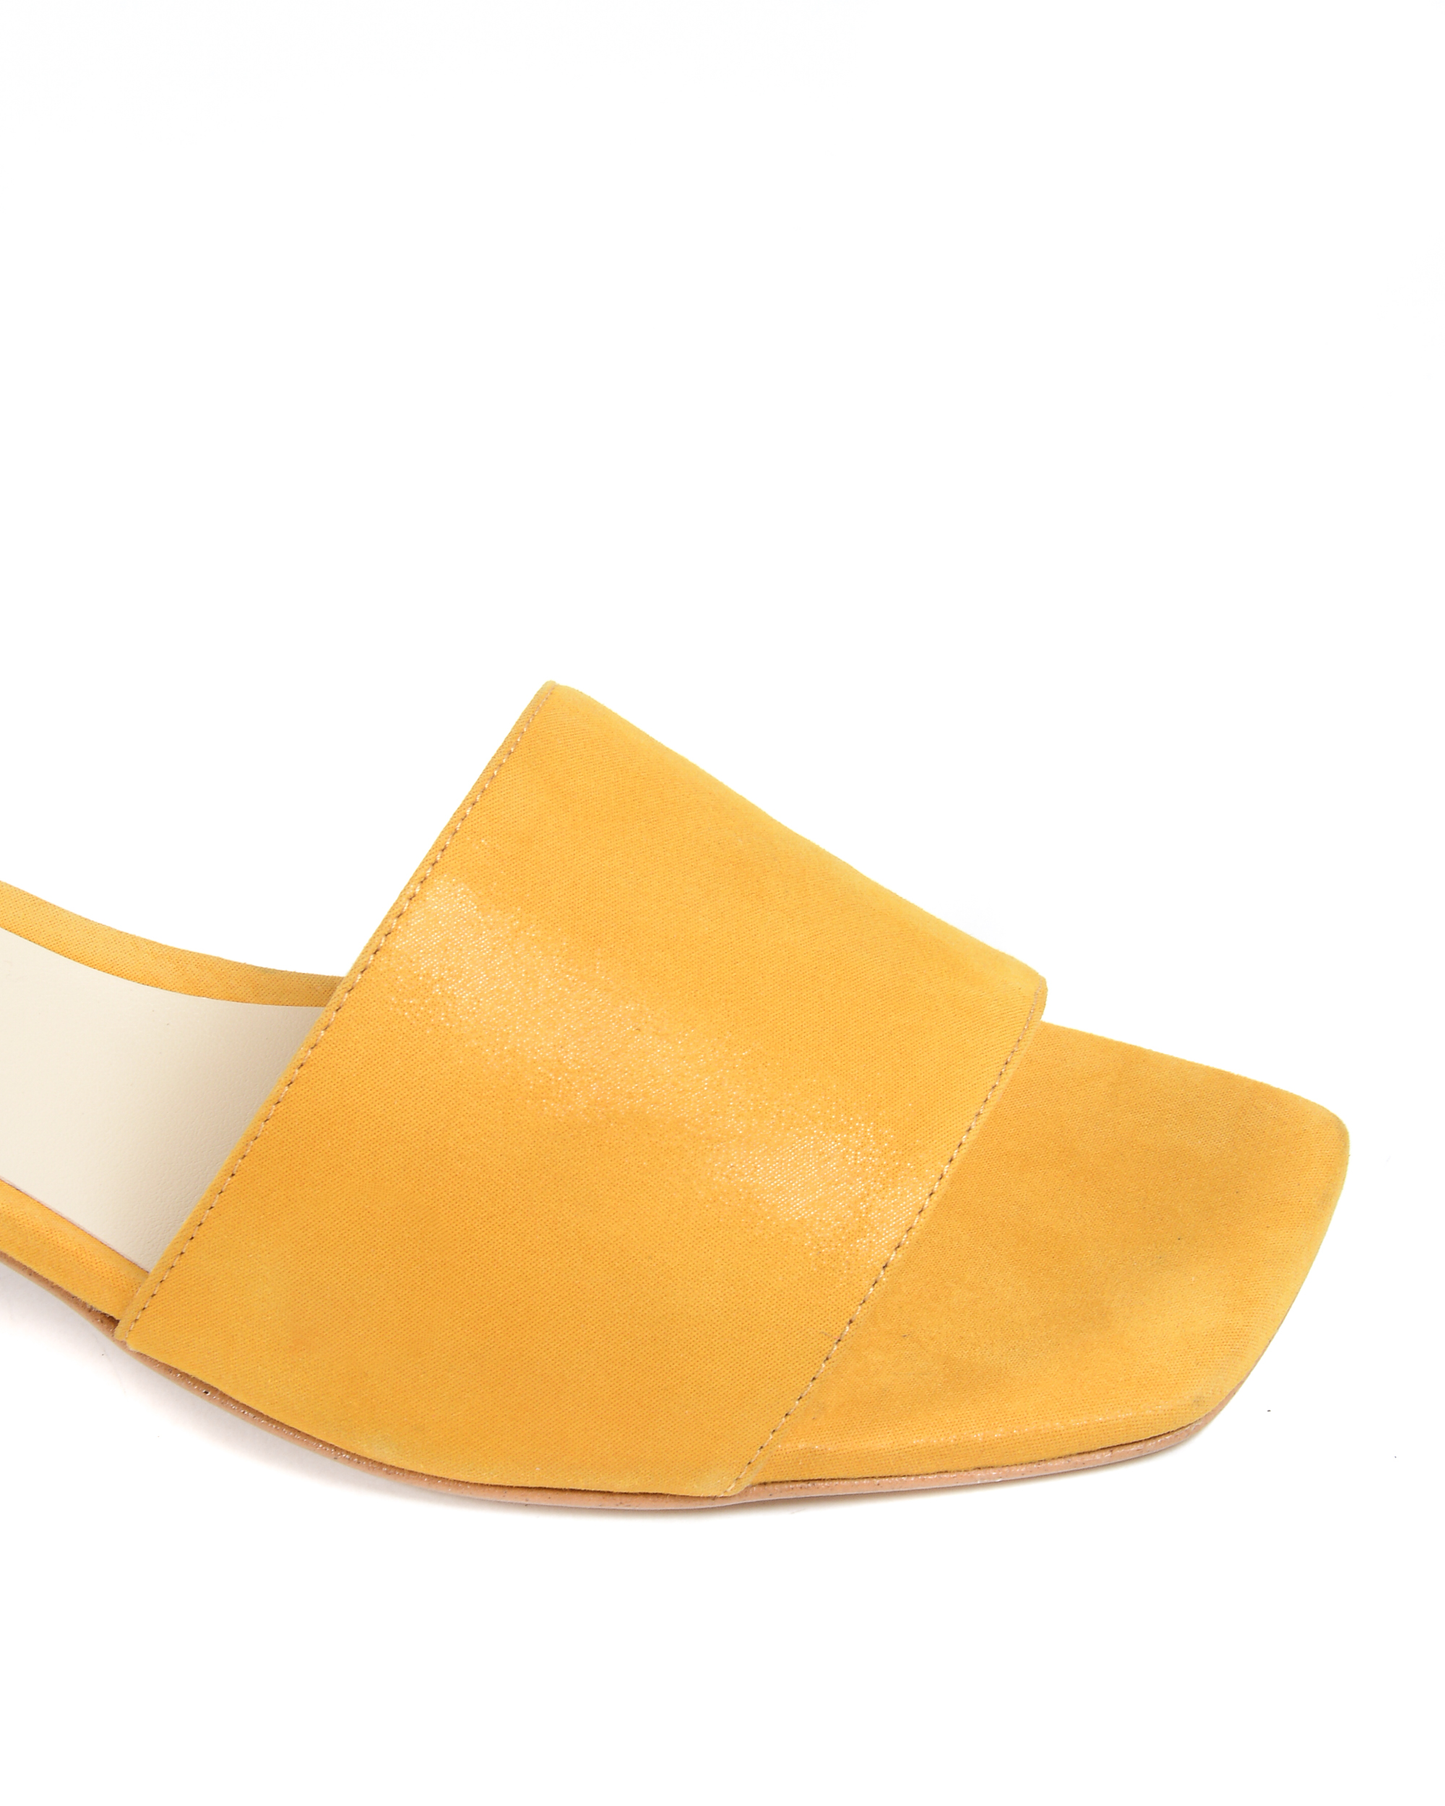 19V69 Italia Womens Sandal Yellow 4909 PELLE AMBER